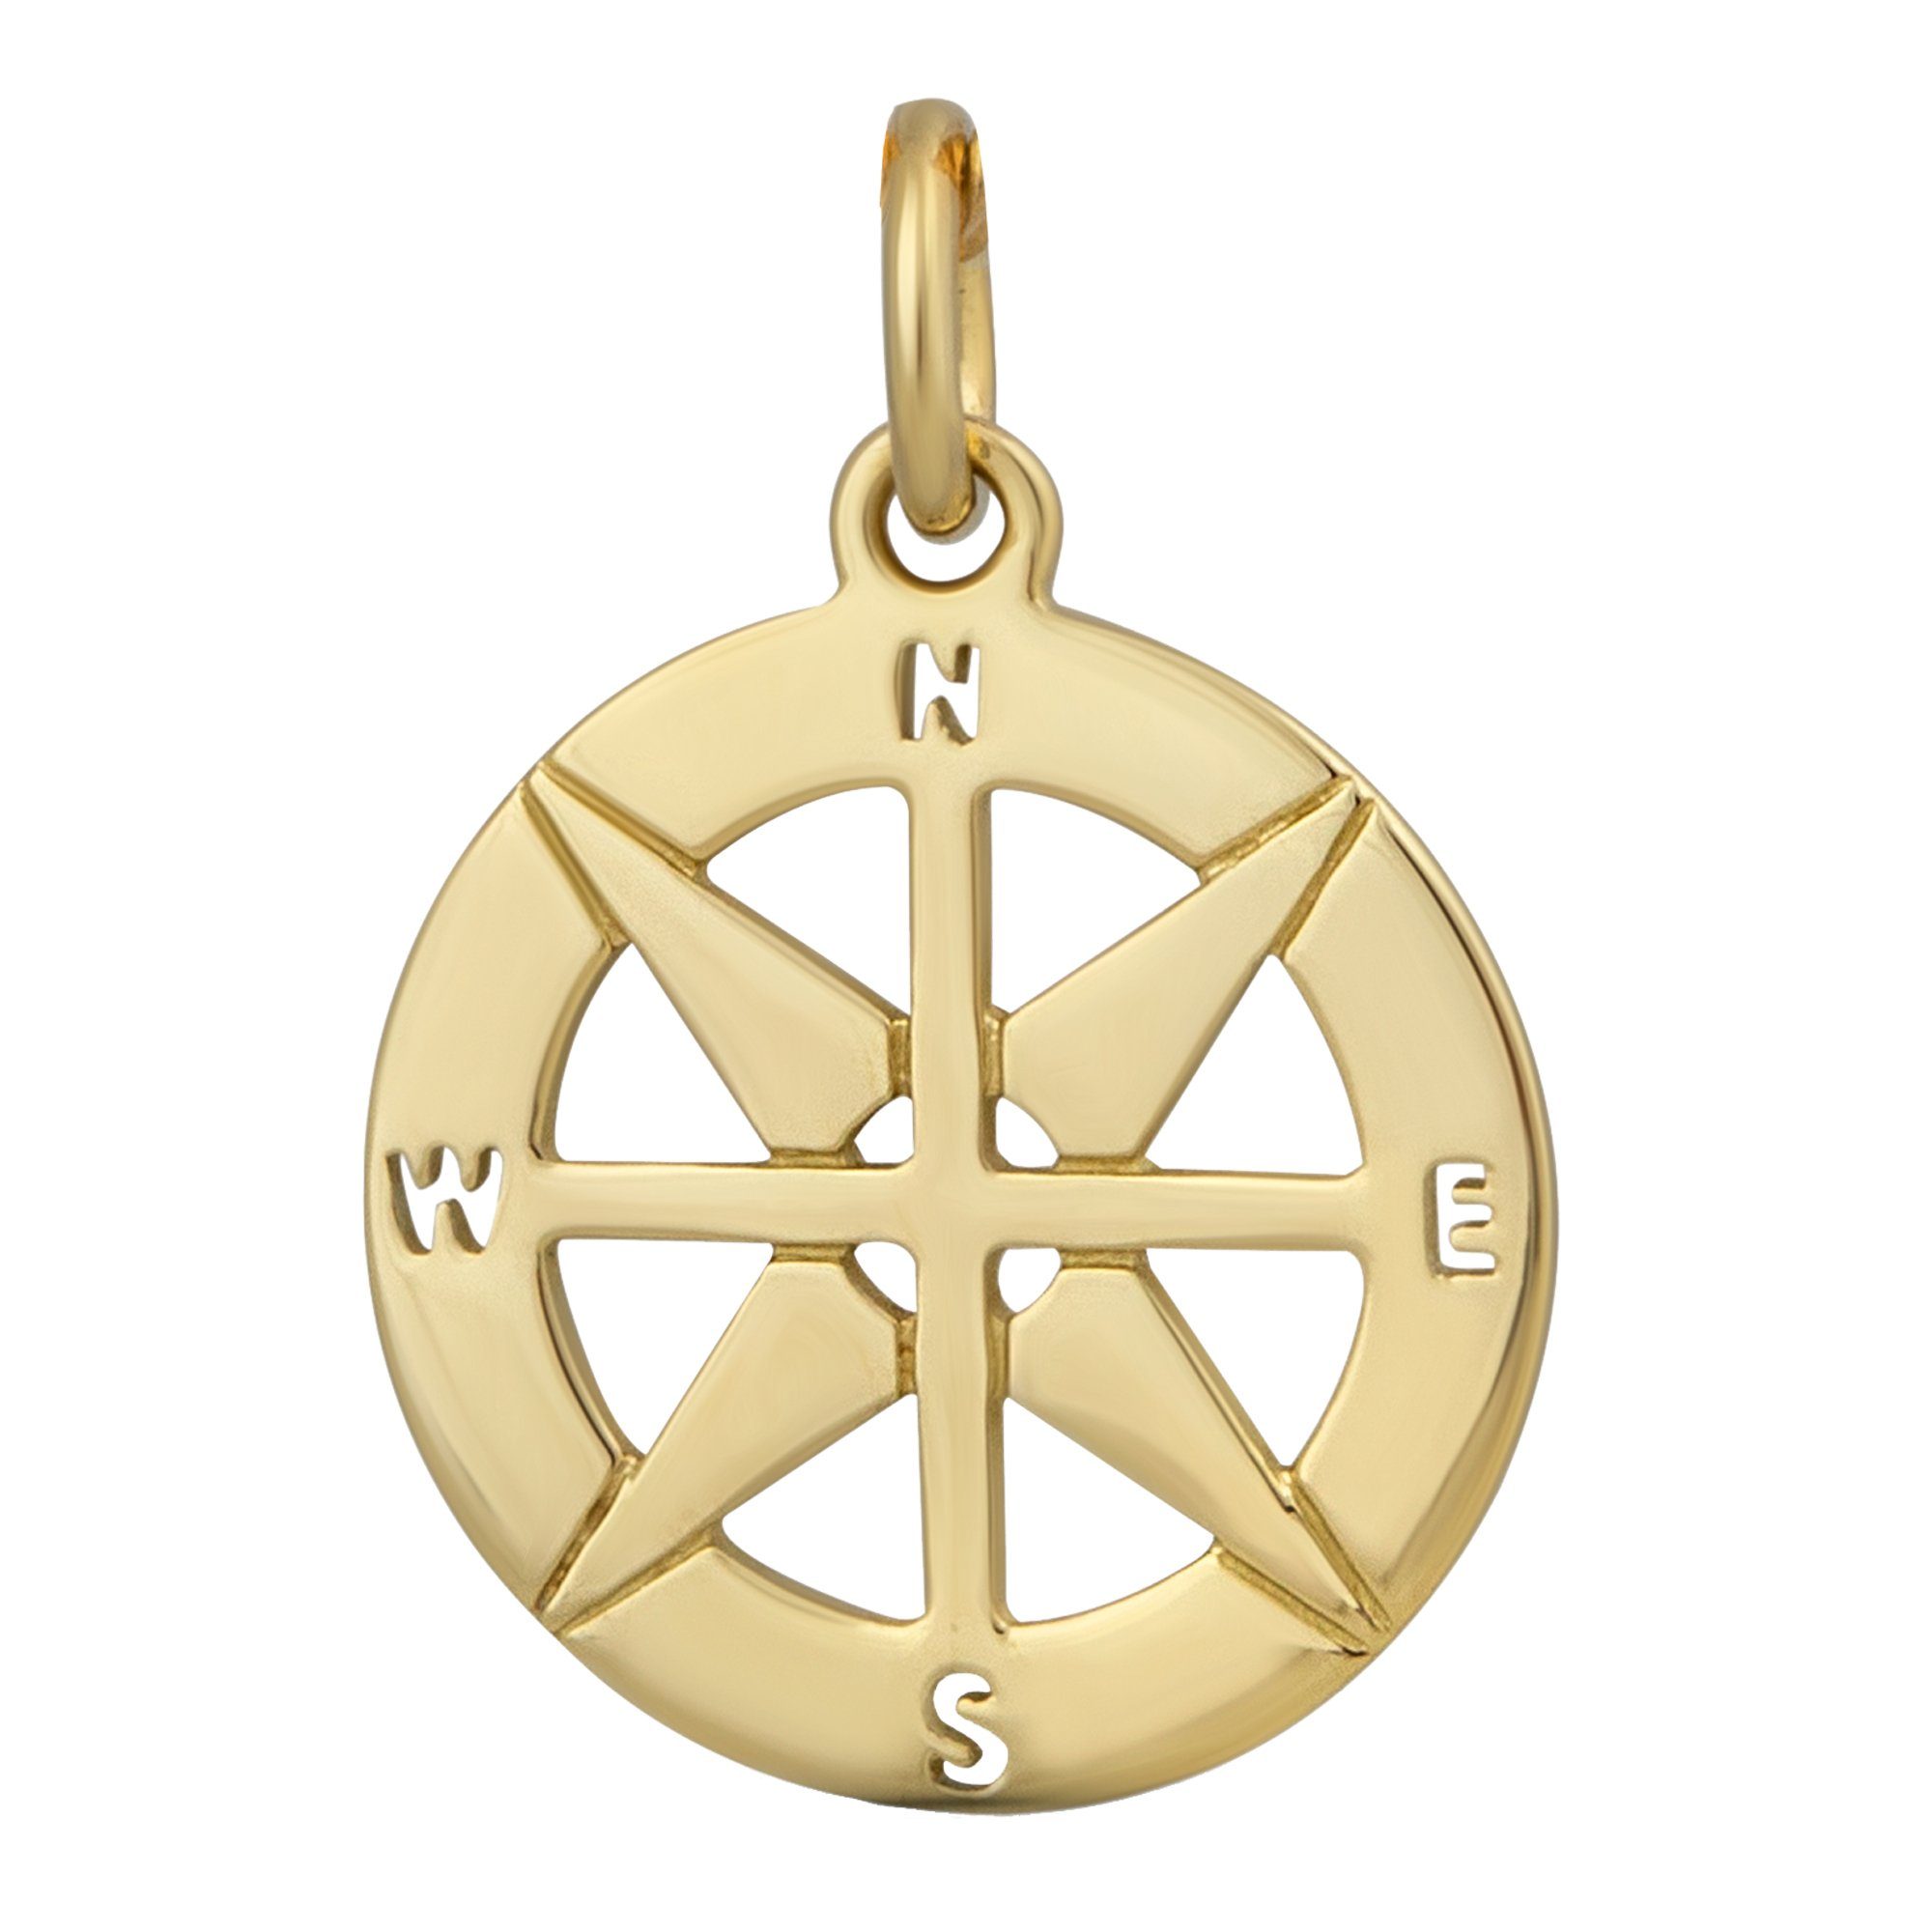 Orolino Kettenanhänger 375 Gold Kompass-Motiv, Inkl Etui zum Aufbewahren  deines edlen Accessoires